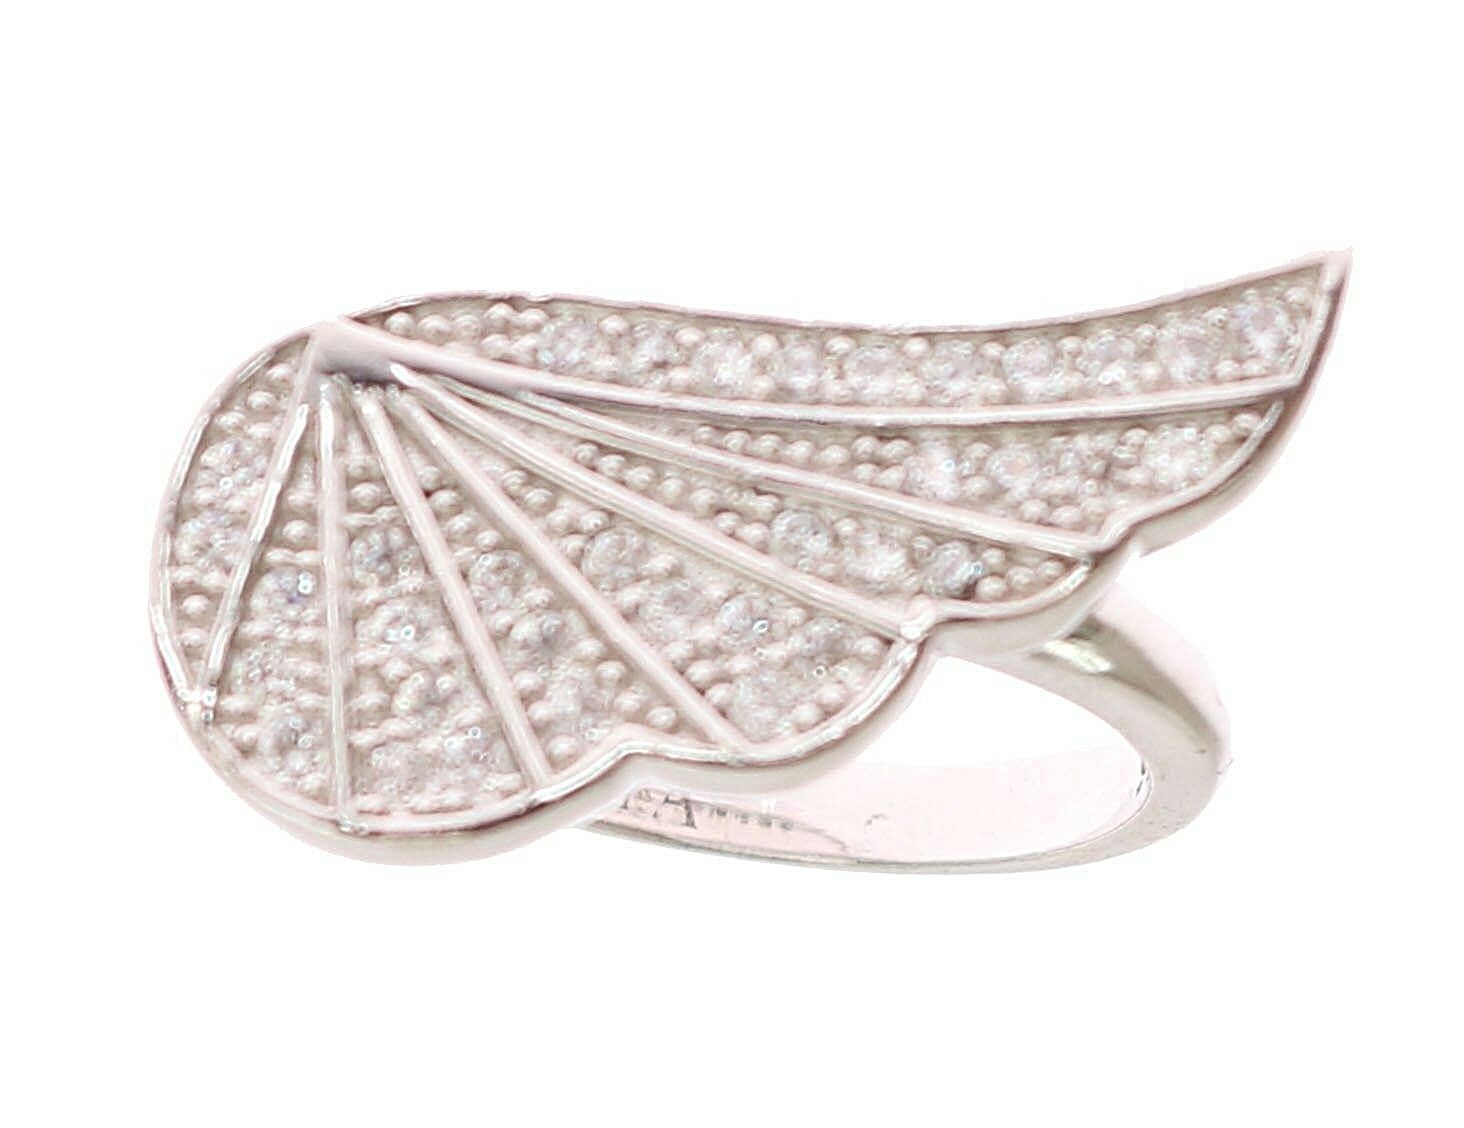 Прозрачен сребърен пръстен Nialaya Wing CZ 925